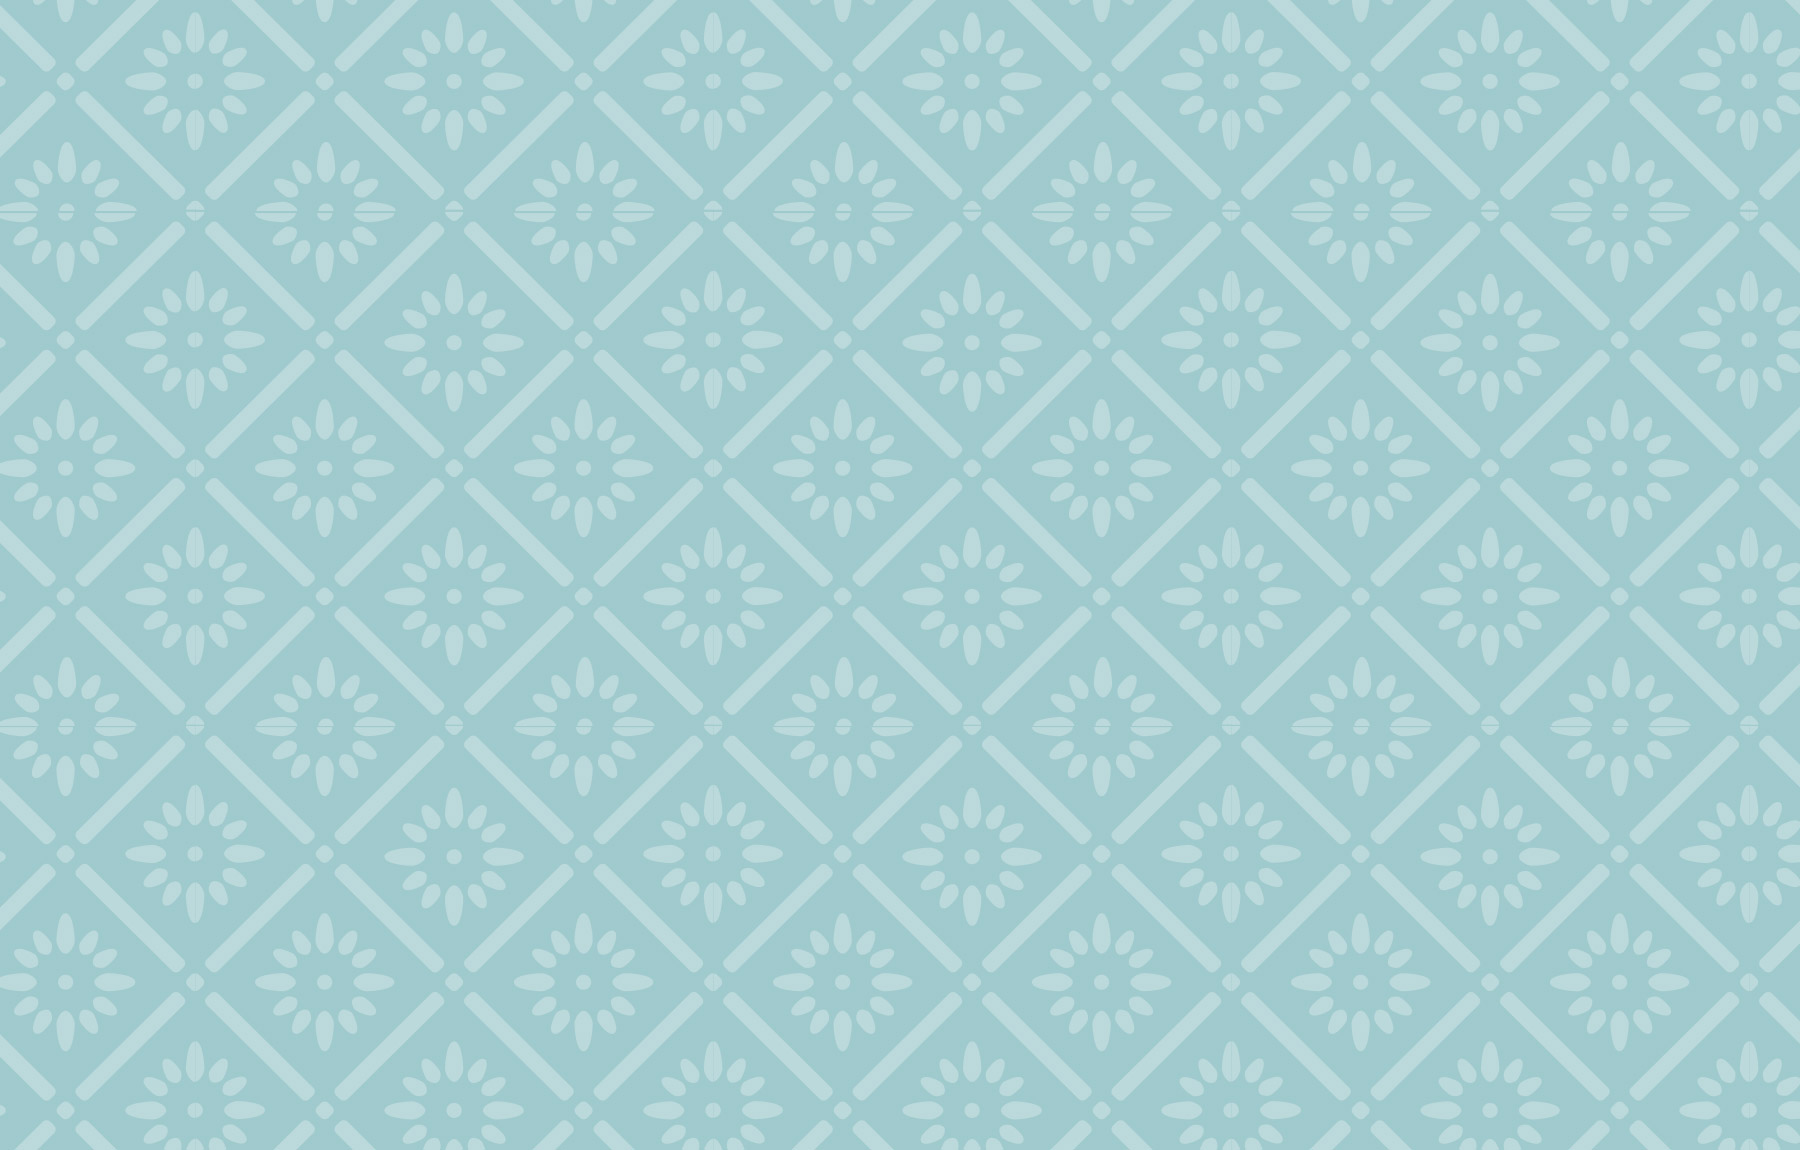 Blue floral tile pattern